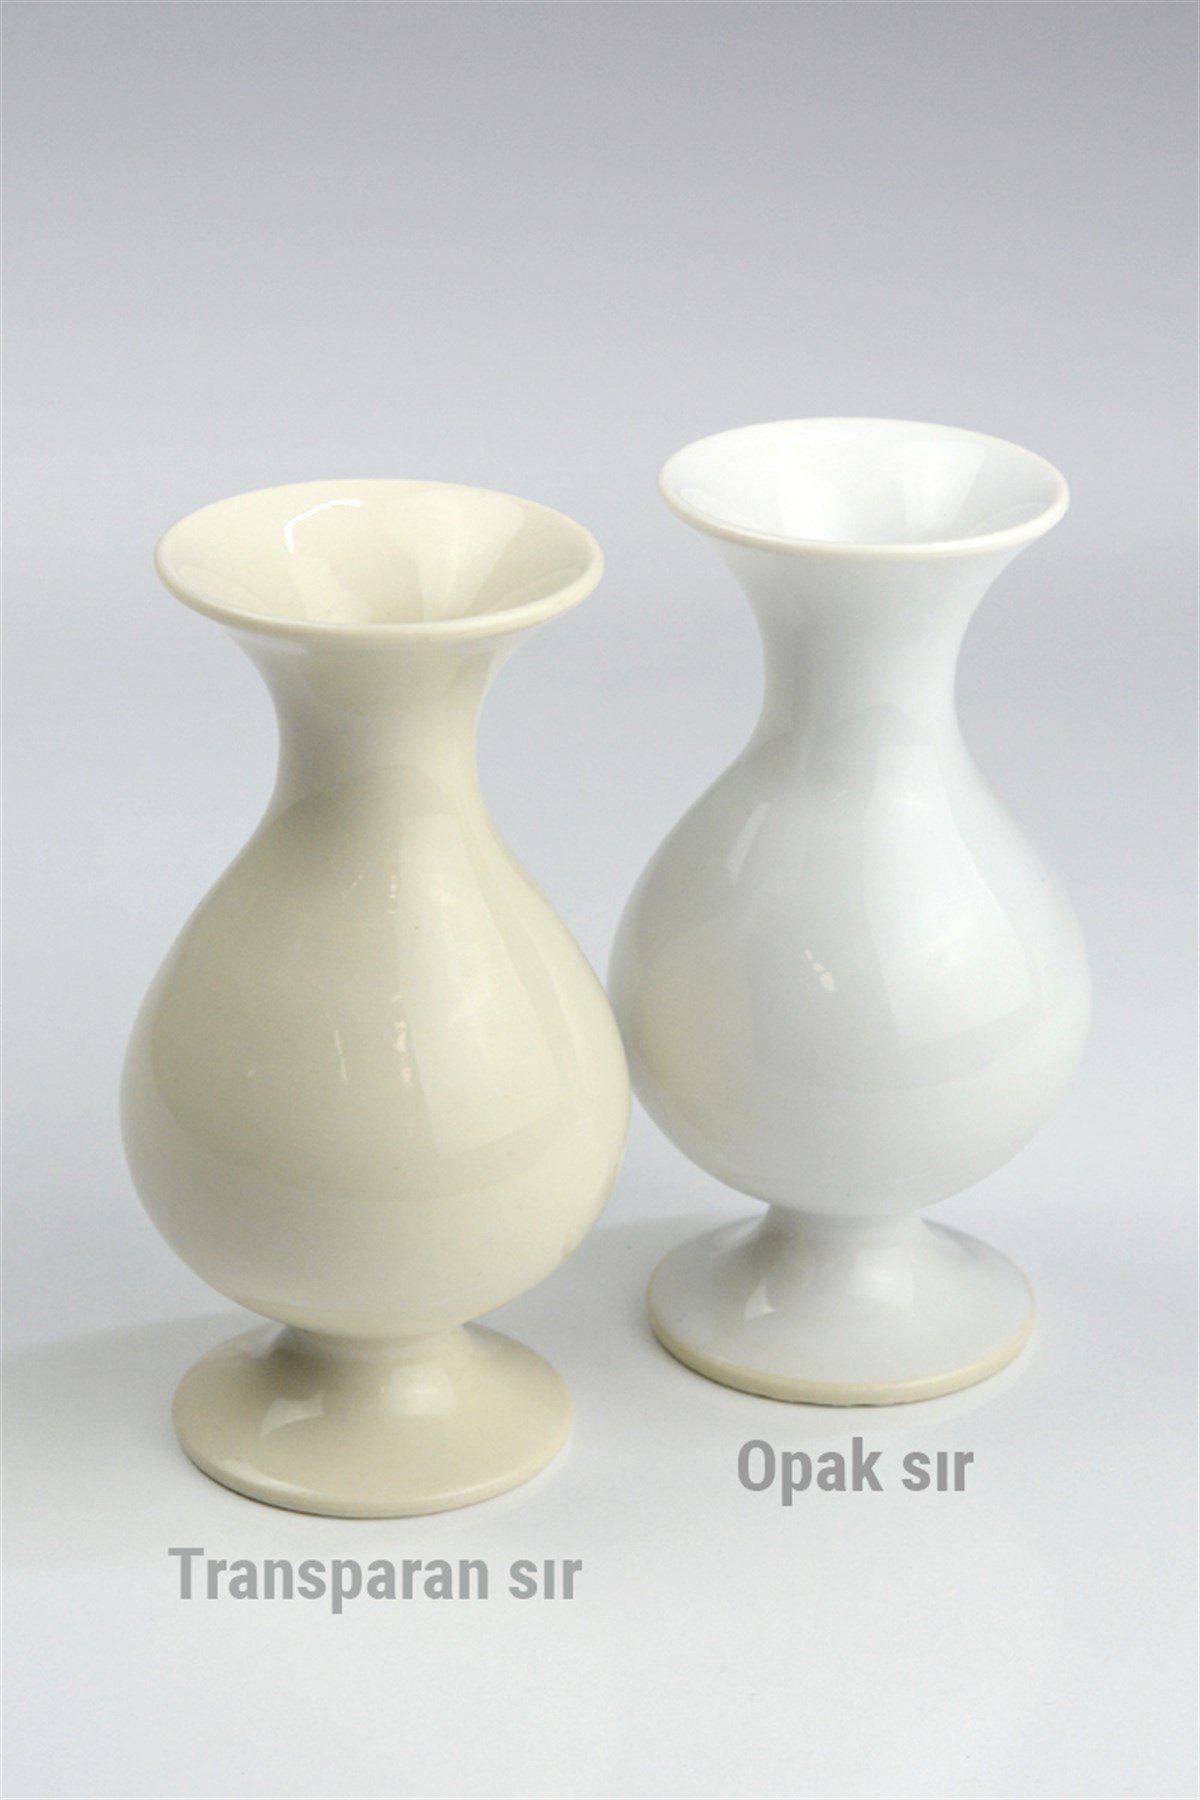 Porselen Sırı (Şeffaf) Hazır (Sıvı) Yd. 1180 °C - Refsan